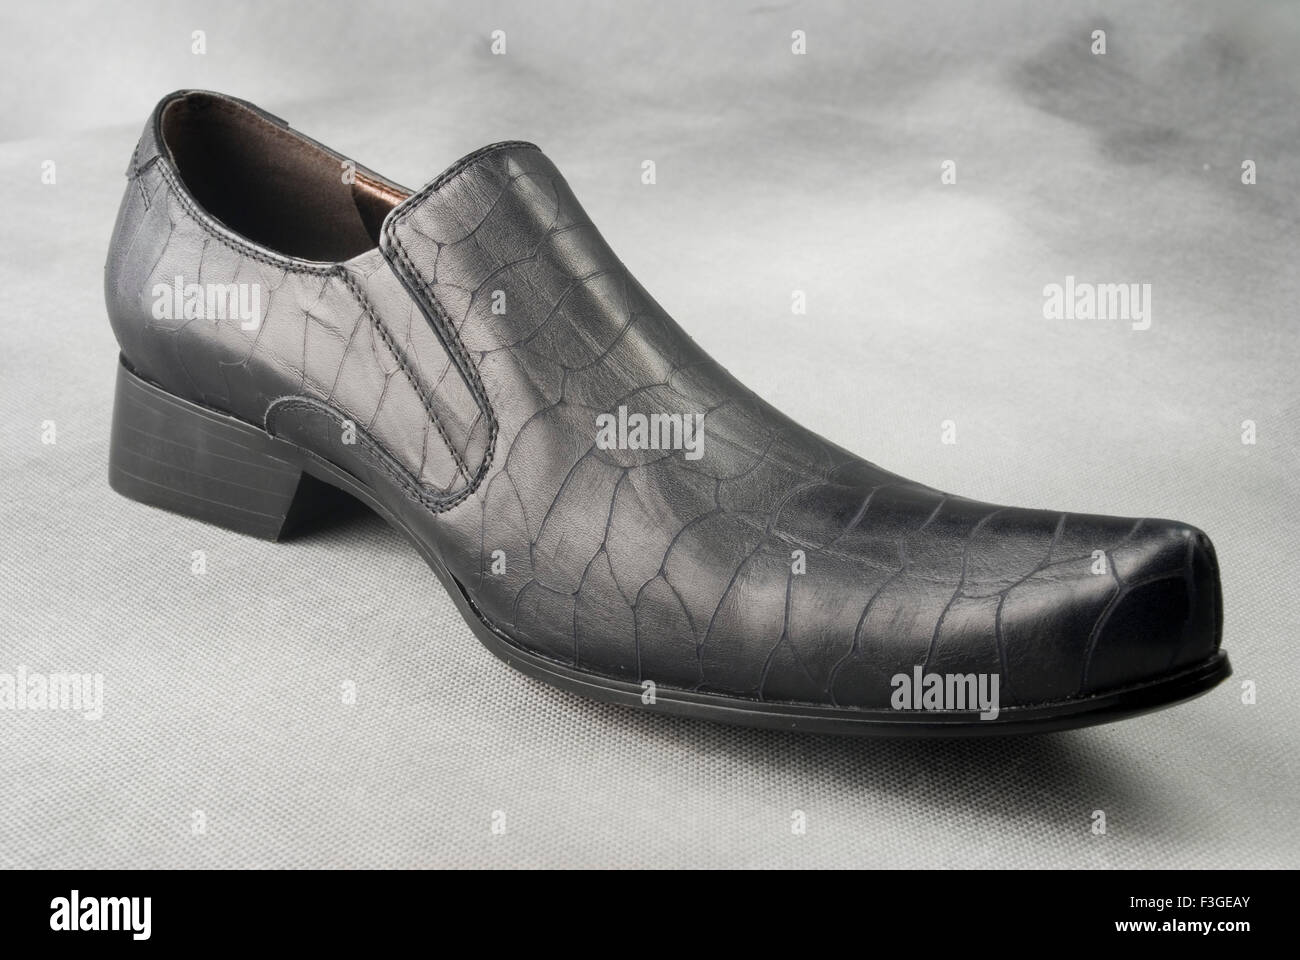 Chaussure en cuir noir sur fond gris MR Banque D'Images